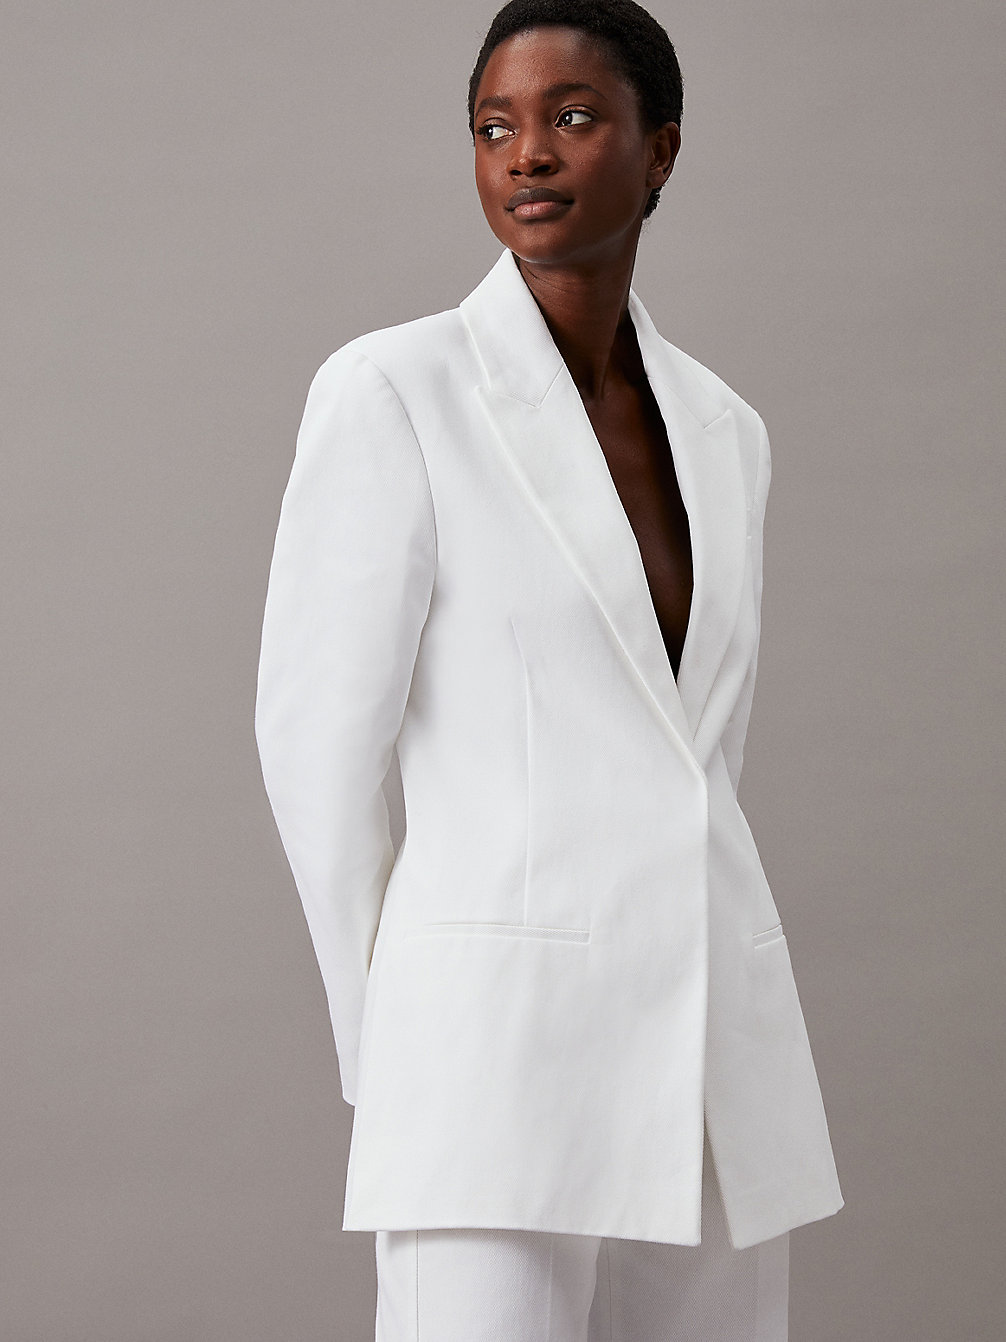 BRIGHT WHITE Cotton Twill Tailored Blazer undefined Women Calvin Klein